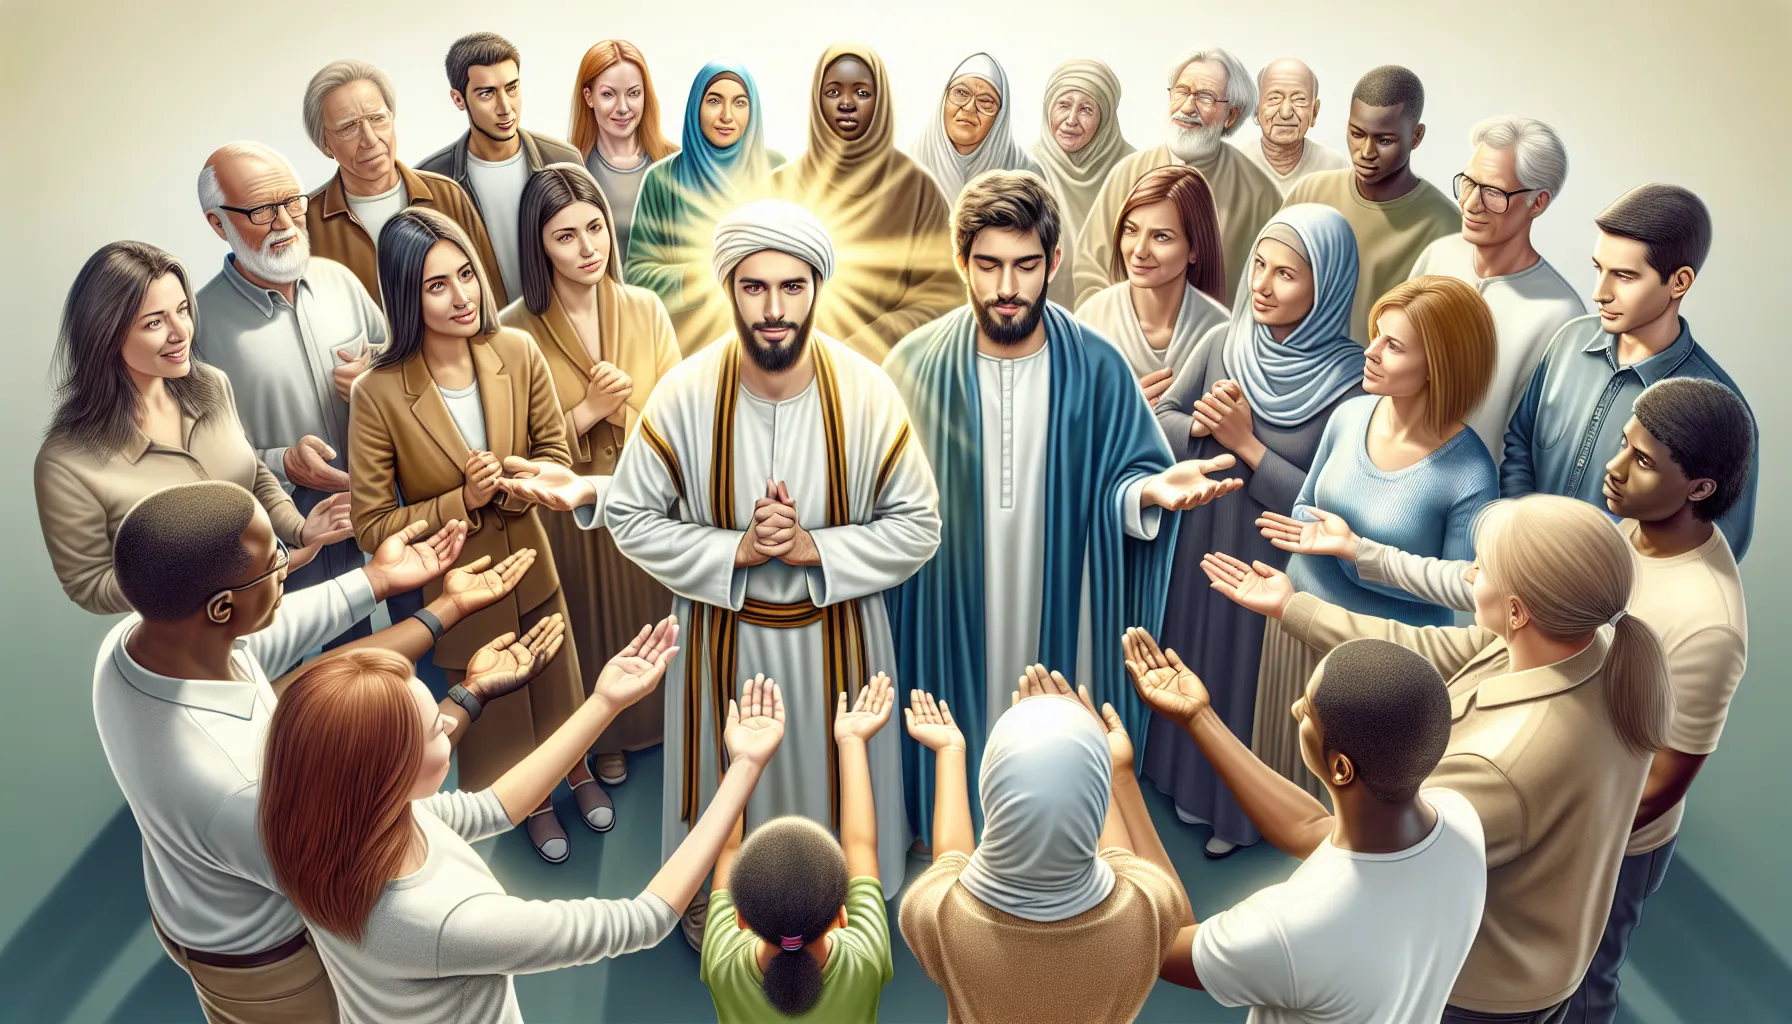 Imagen representativa de un grupo de personas quedando seleccionadas y destacadas en una comunidad religiosa como los elegidos por Dios.